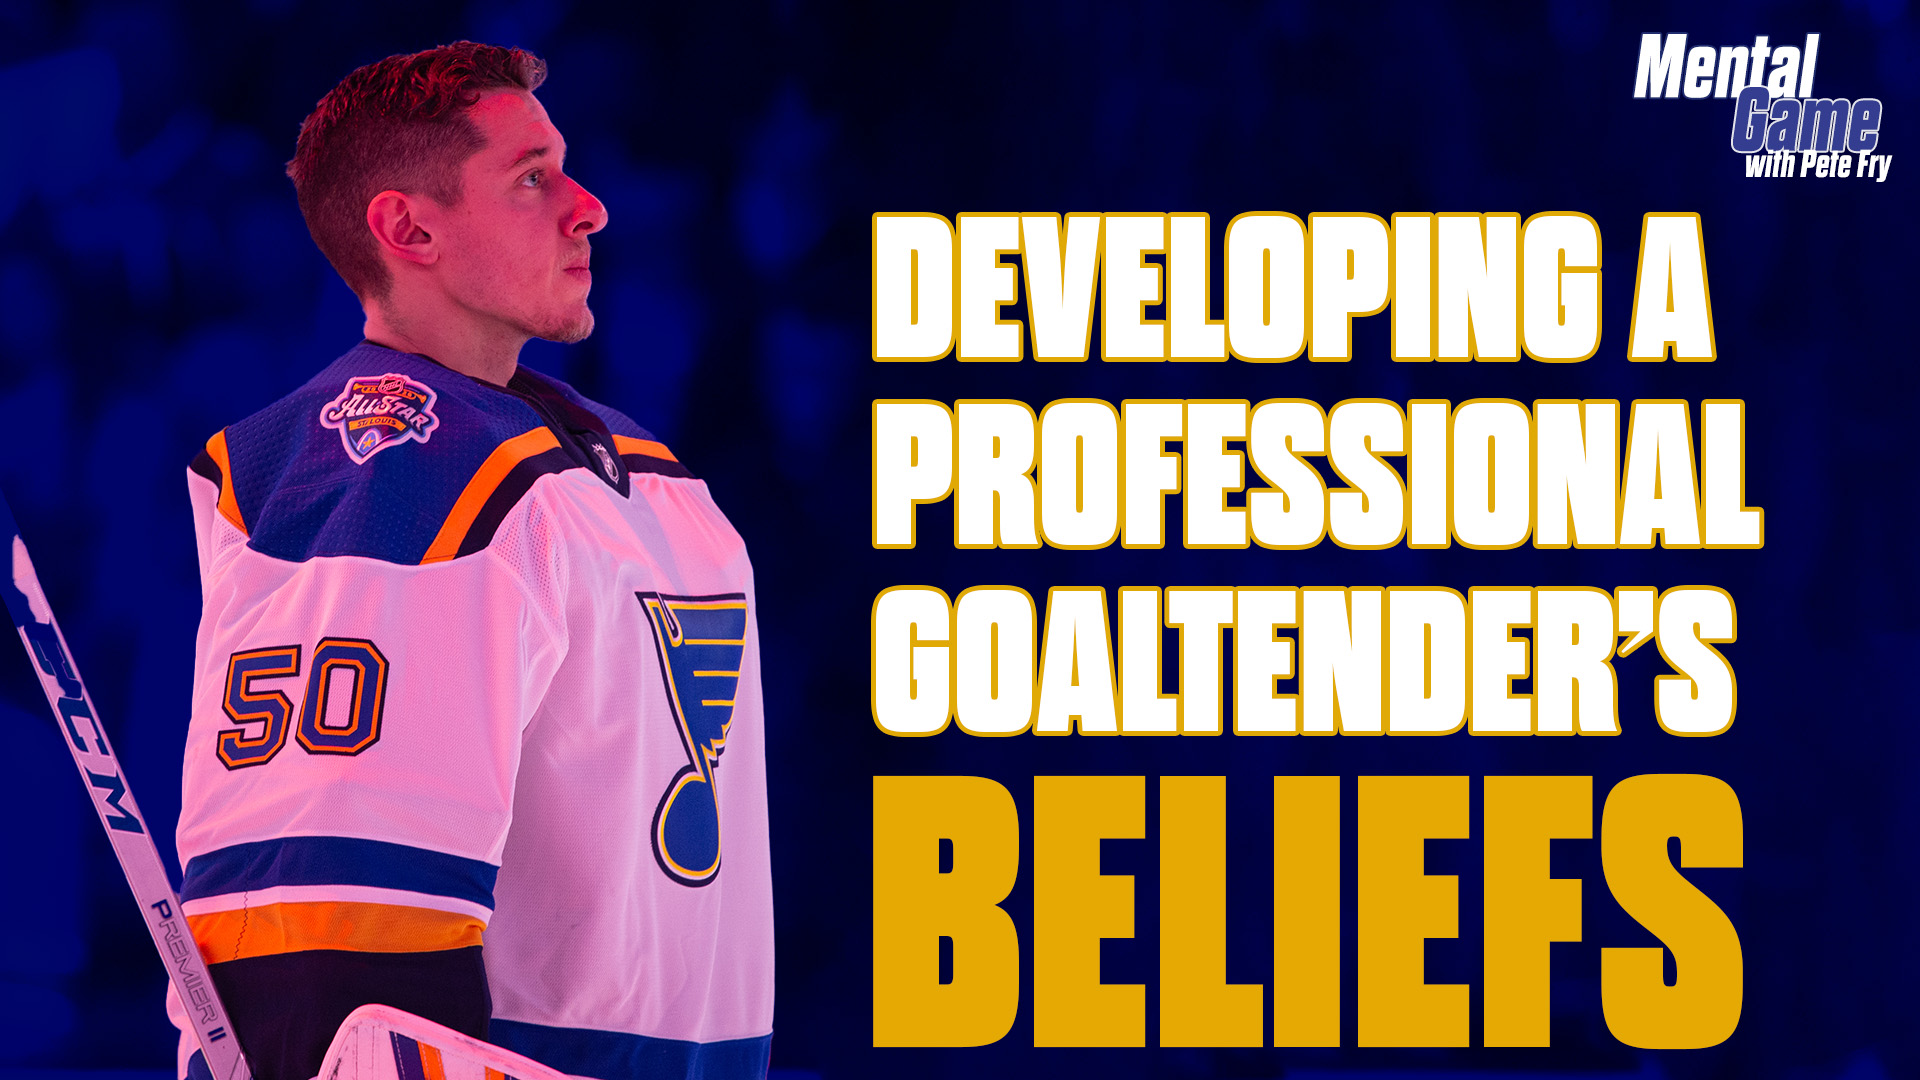 Developing a Professional Goaltender’s Beliefs